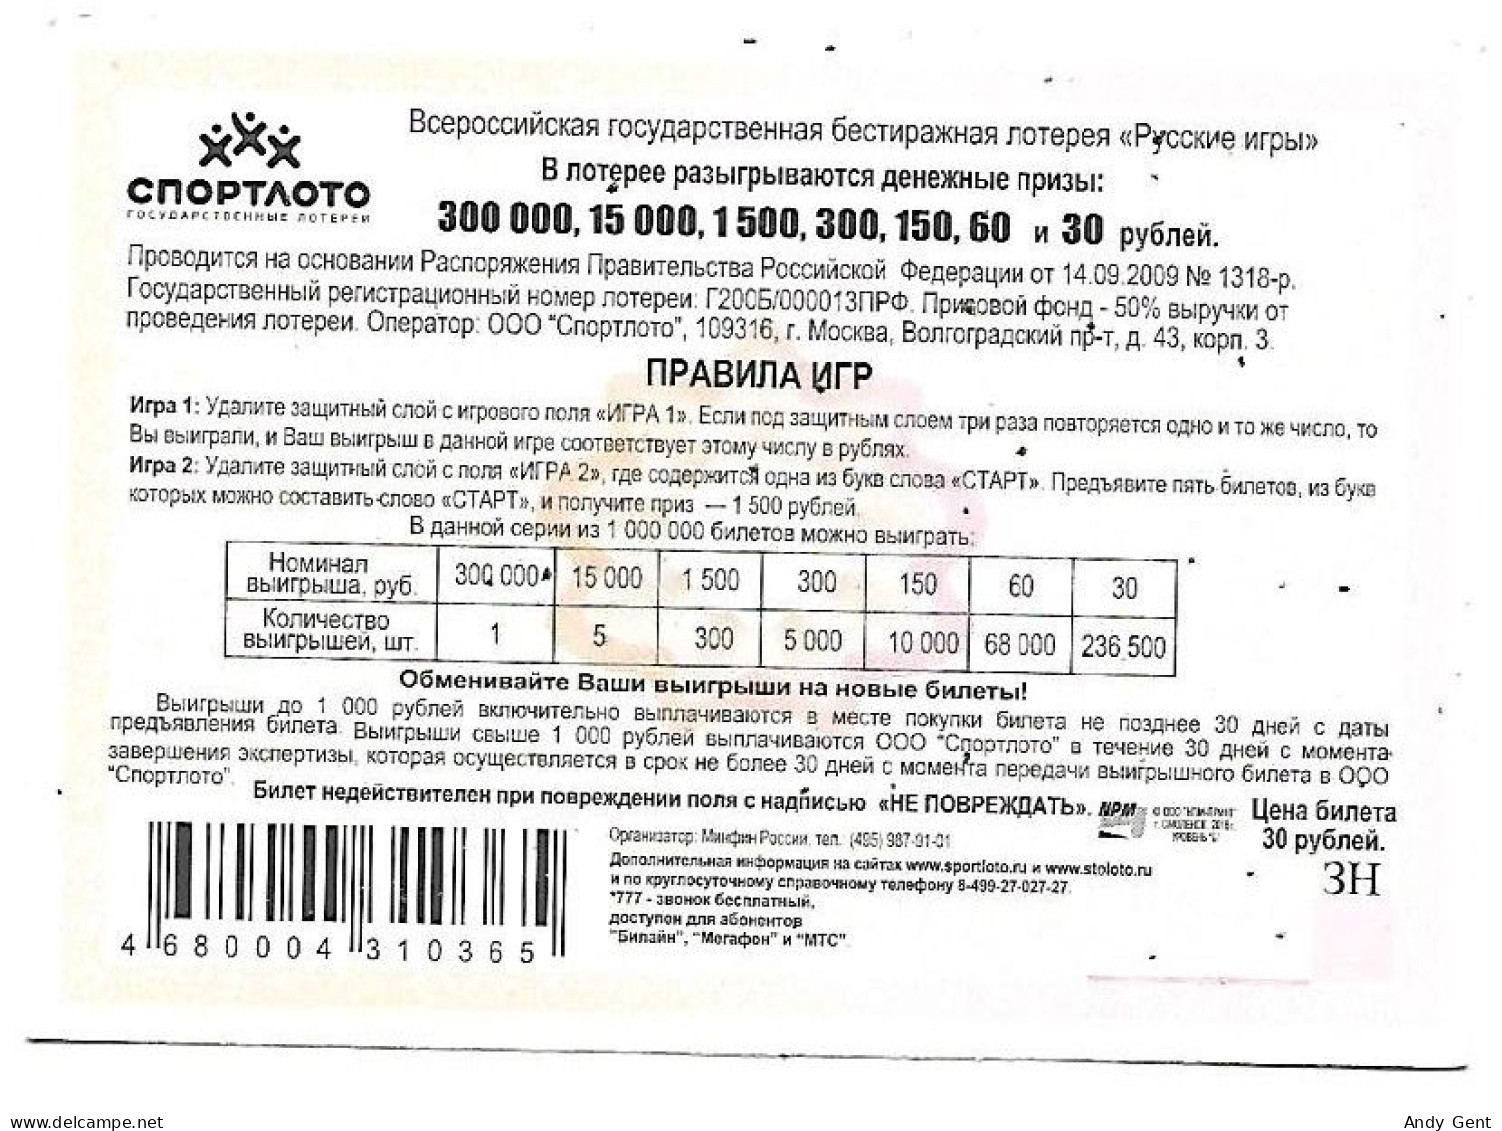 #5 Lottery Ticket / Scratch Russia Gorodki - Billets De Loterie